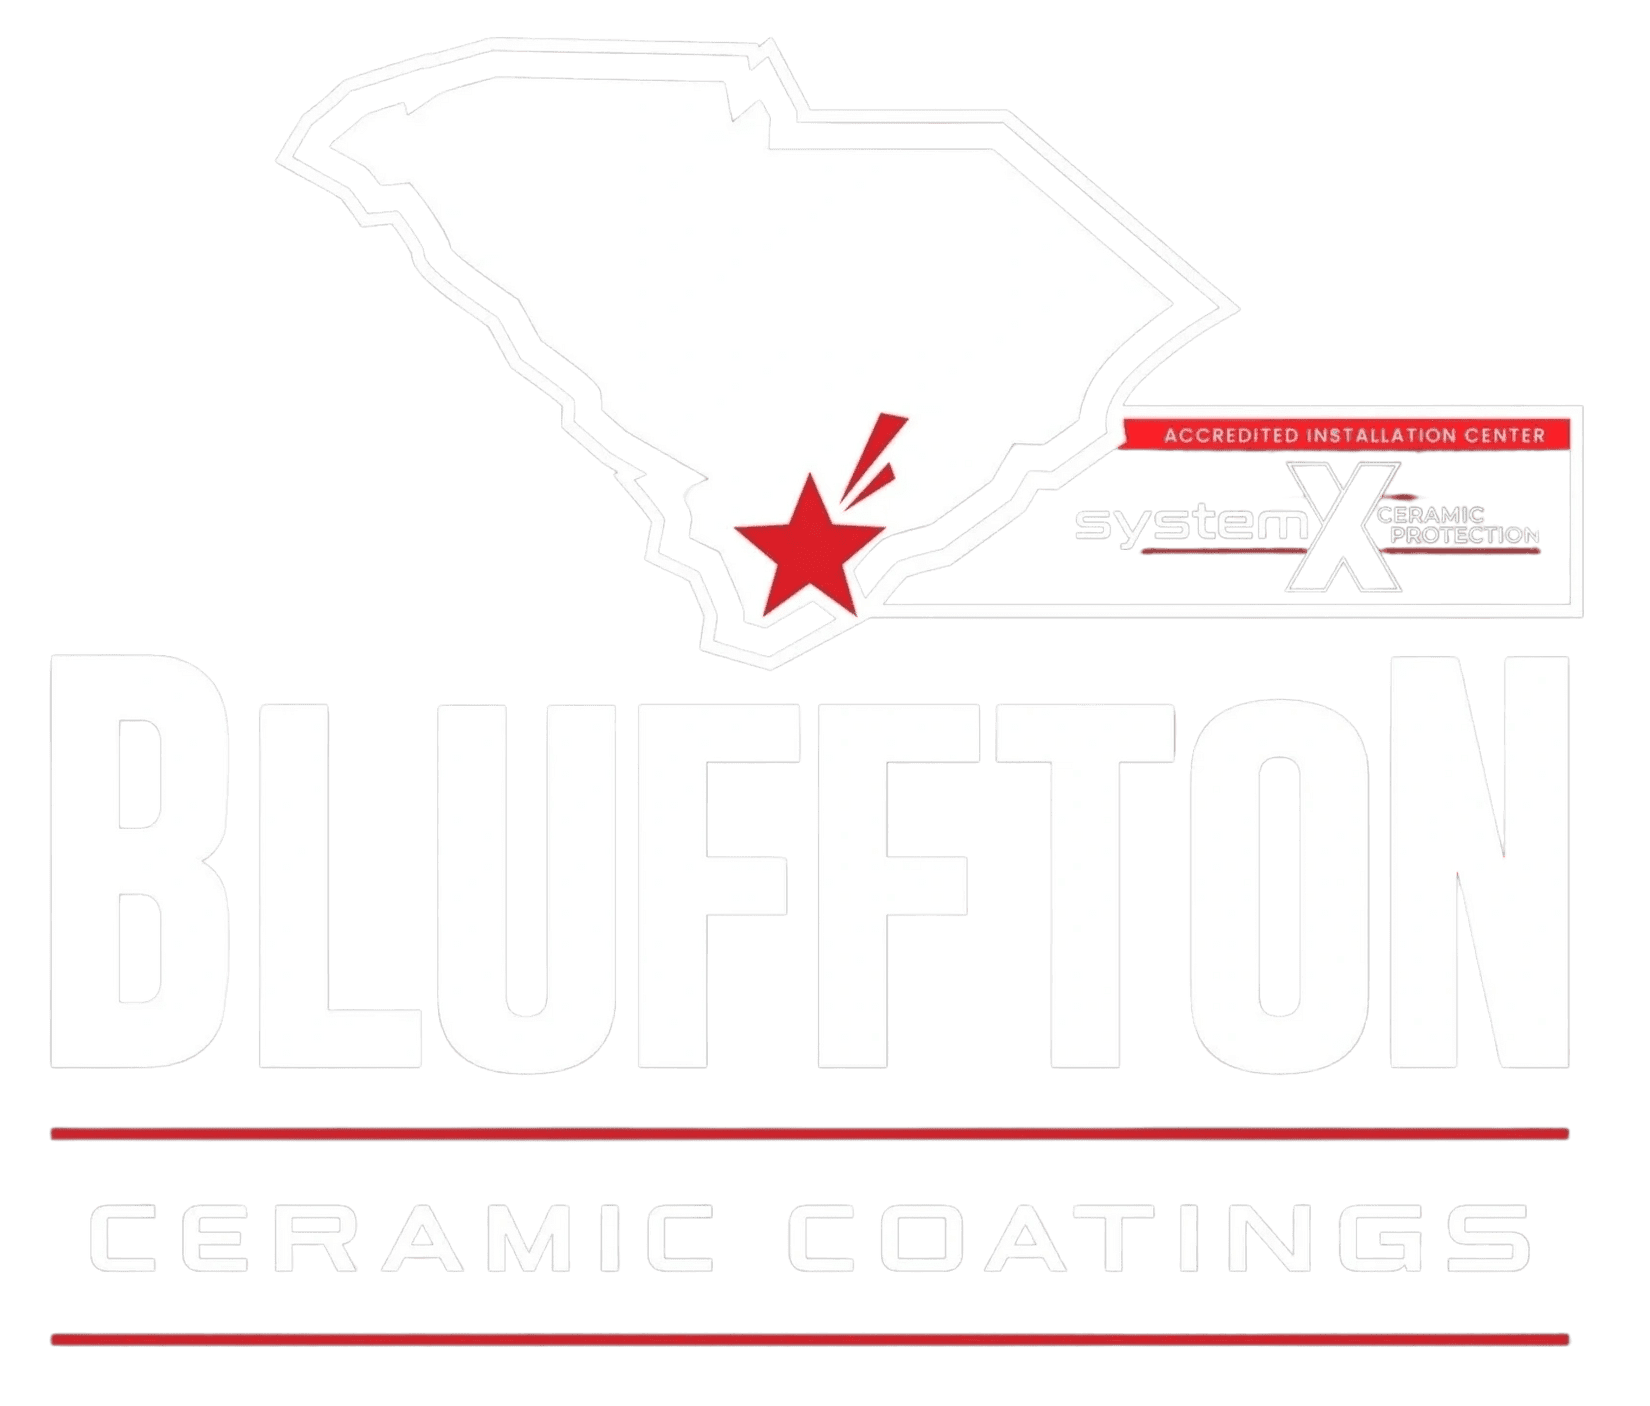 Bluffton Ceramic, LLC